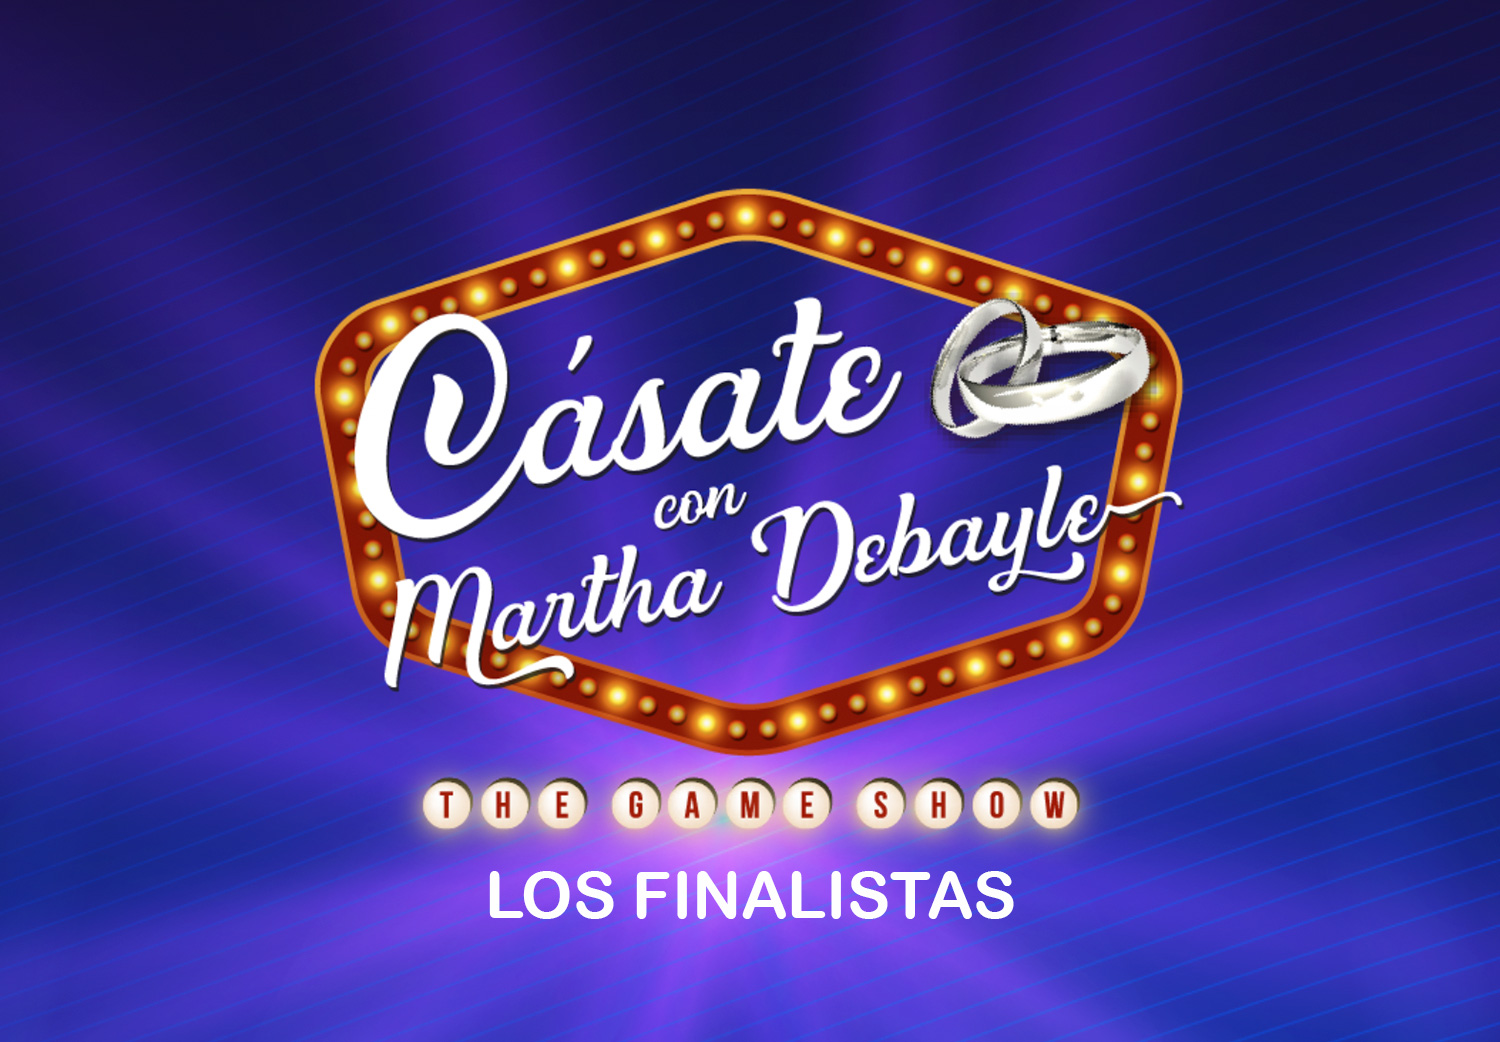 CASATE-CON-MARTHA-DEBAYLE-2023-LOS-FINALISTAS